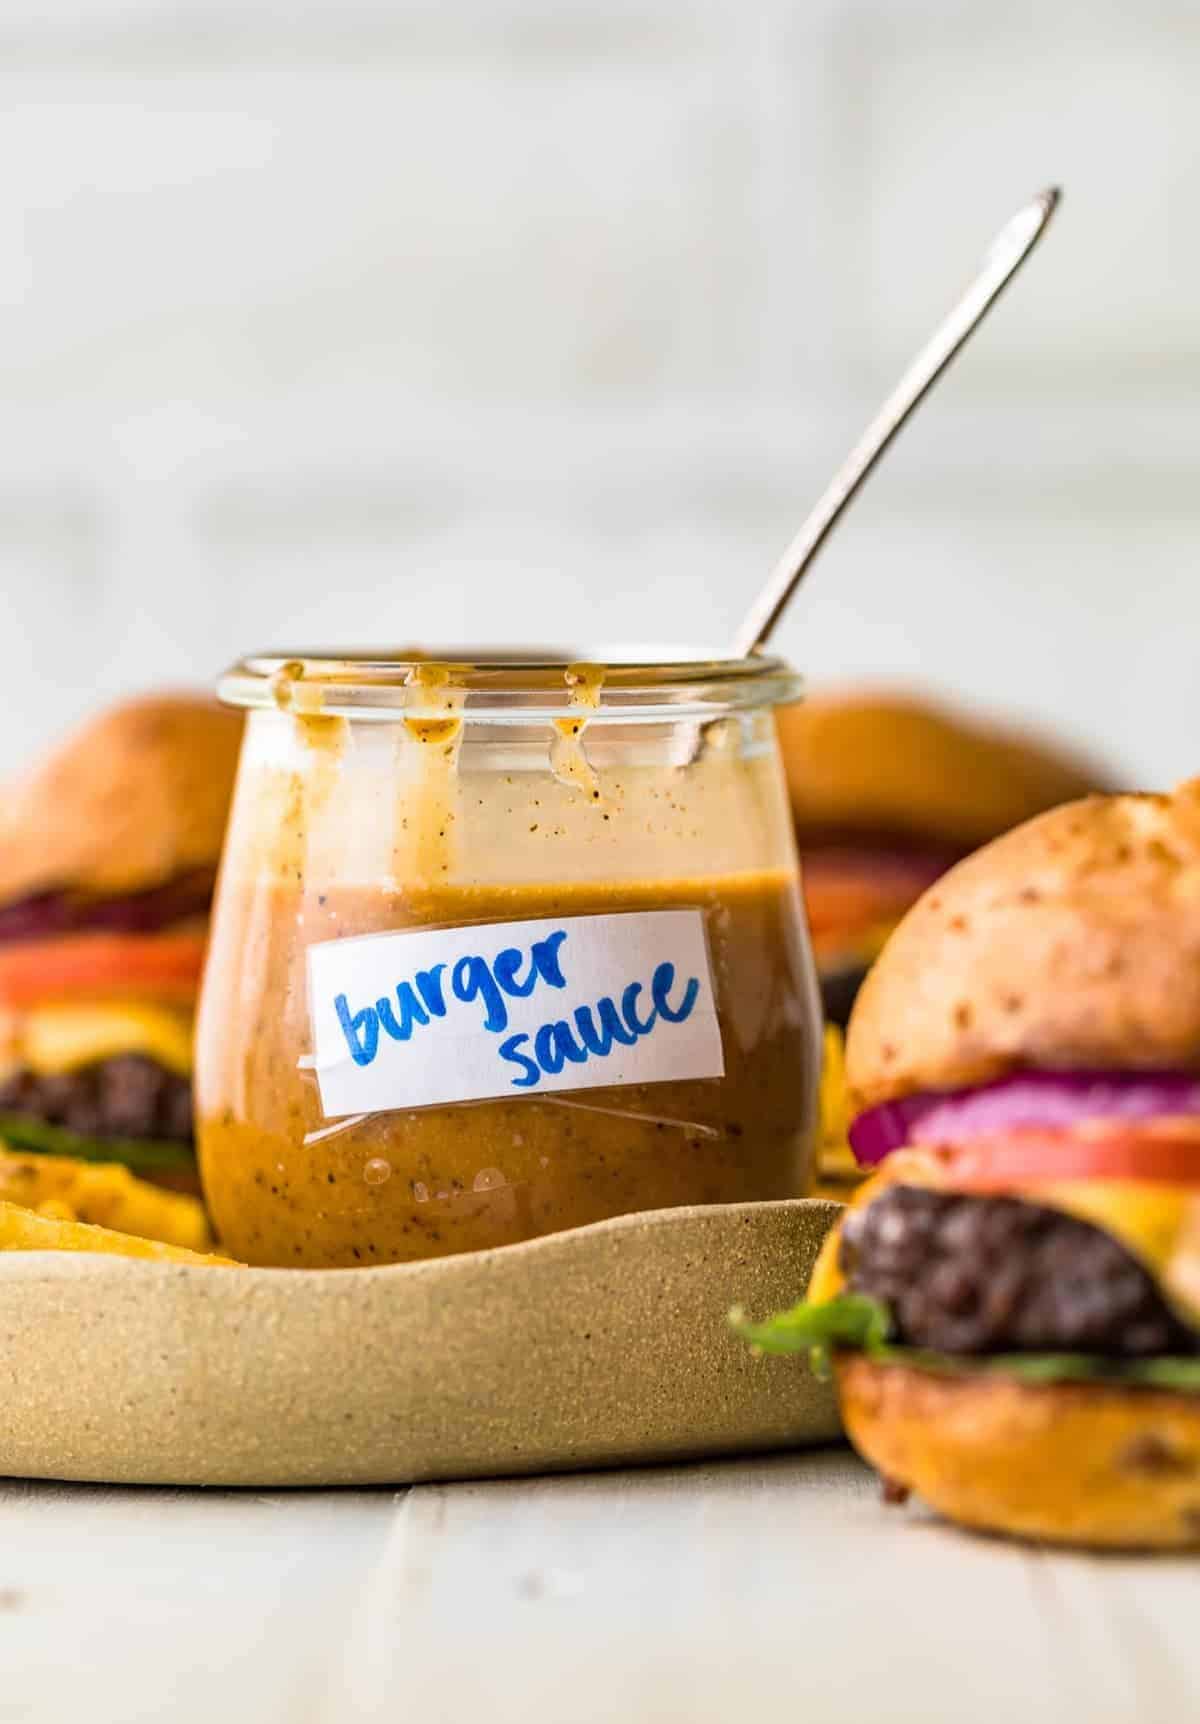 A jar of homemade burger sauce